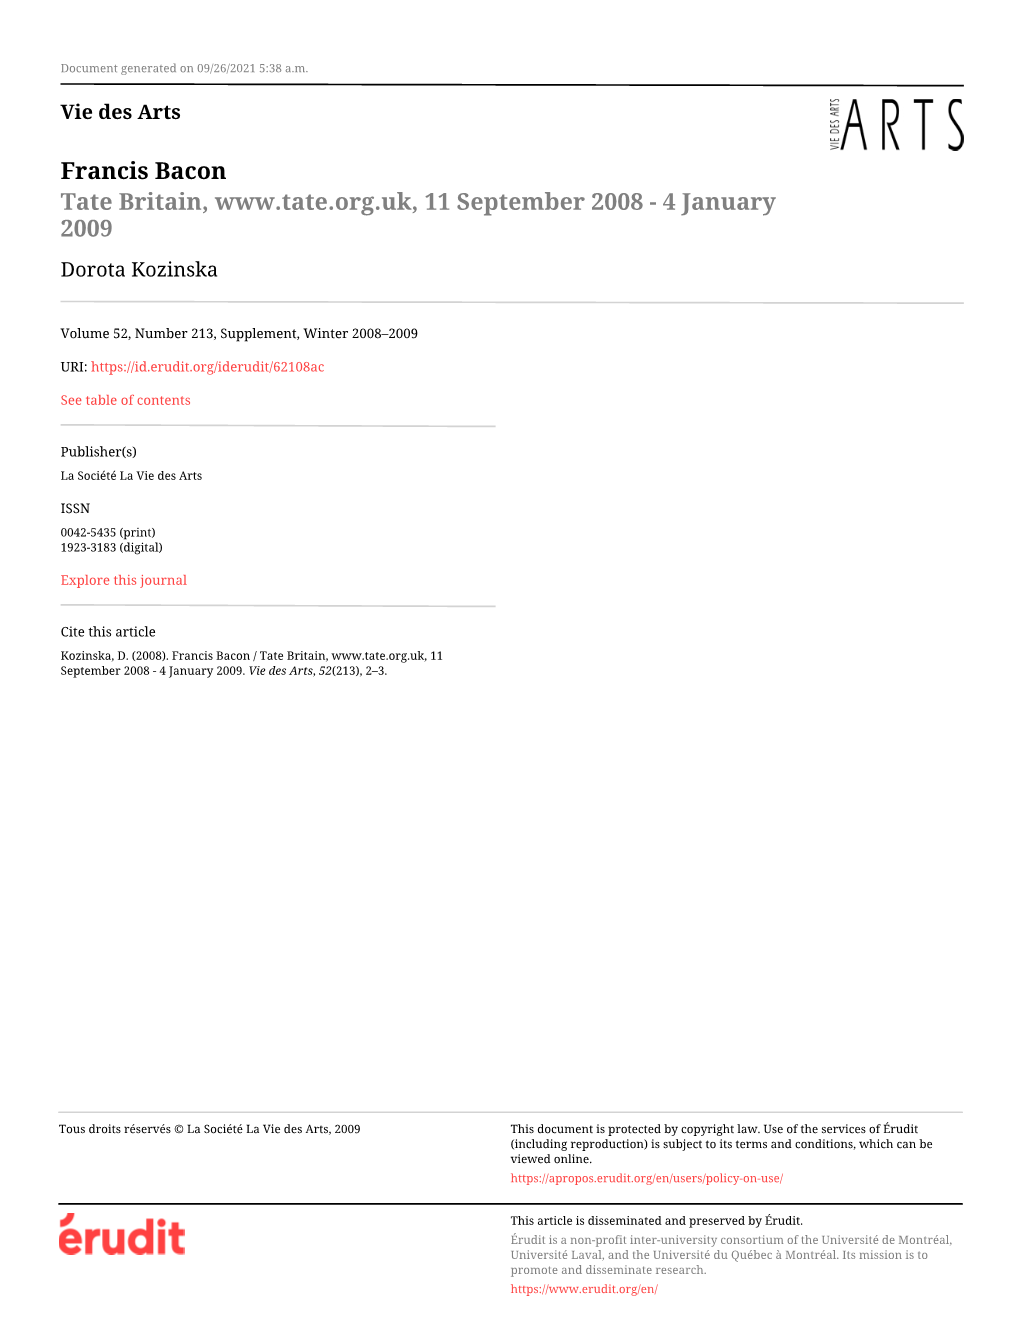 Francis Bacon / Tate Britain, 11 September 2008 - 4 January 2009